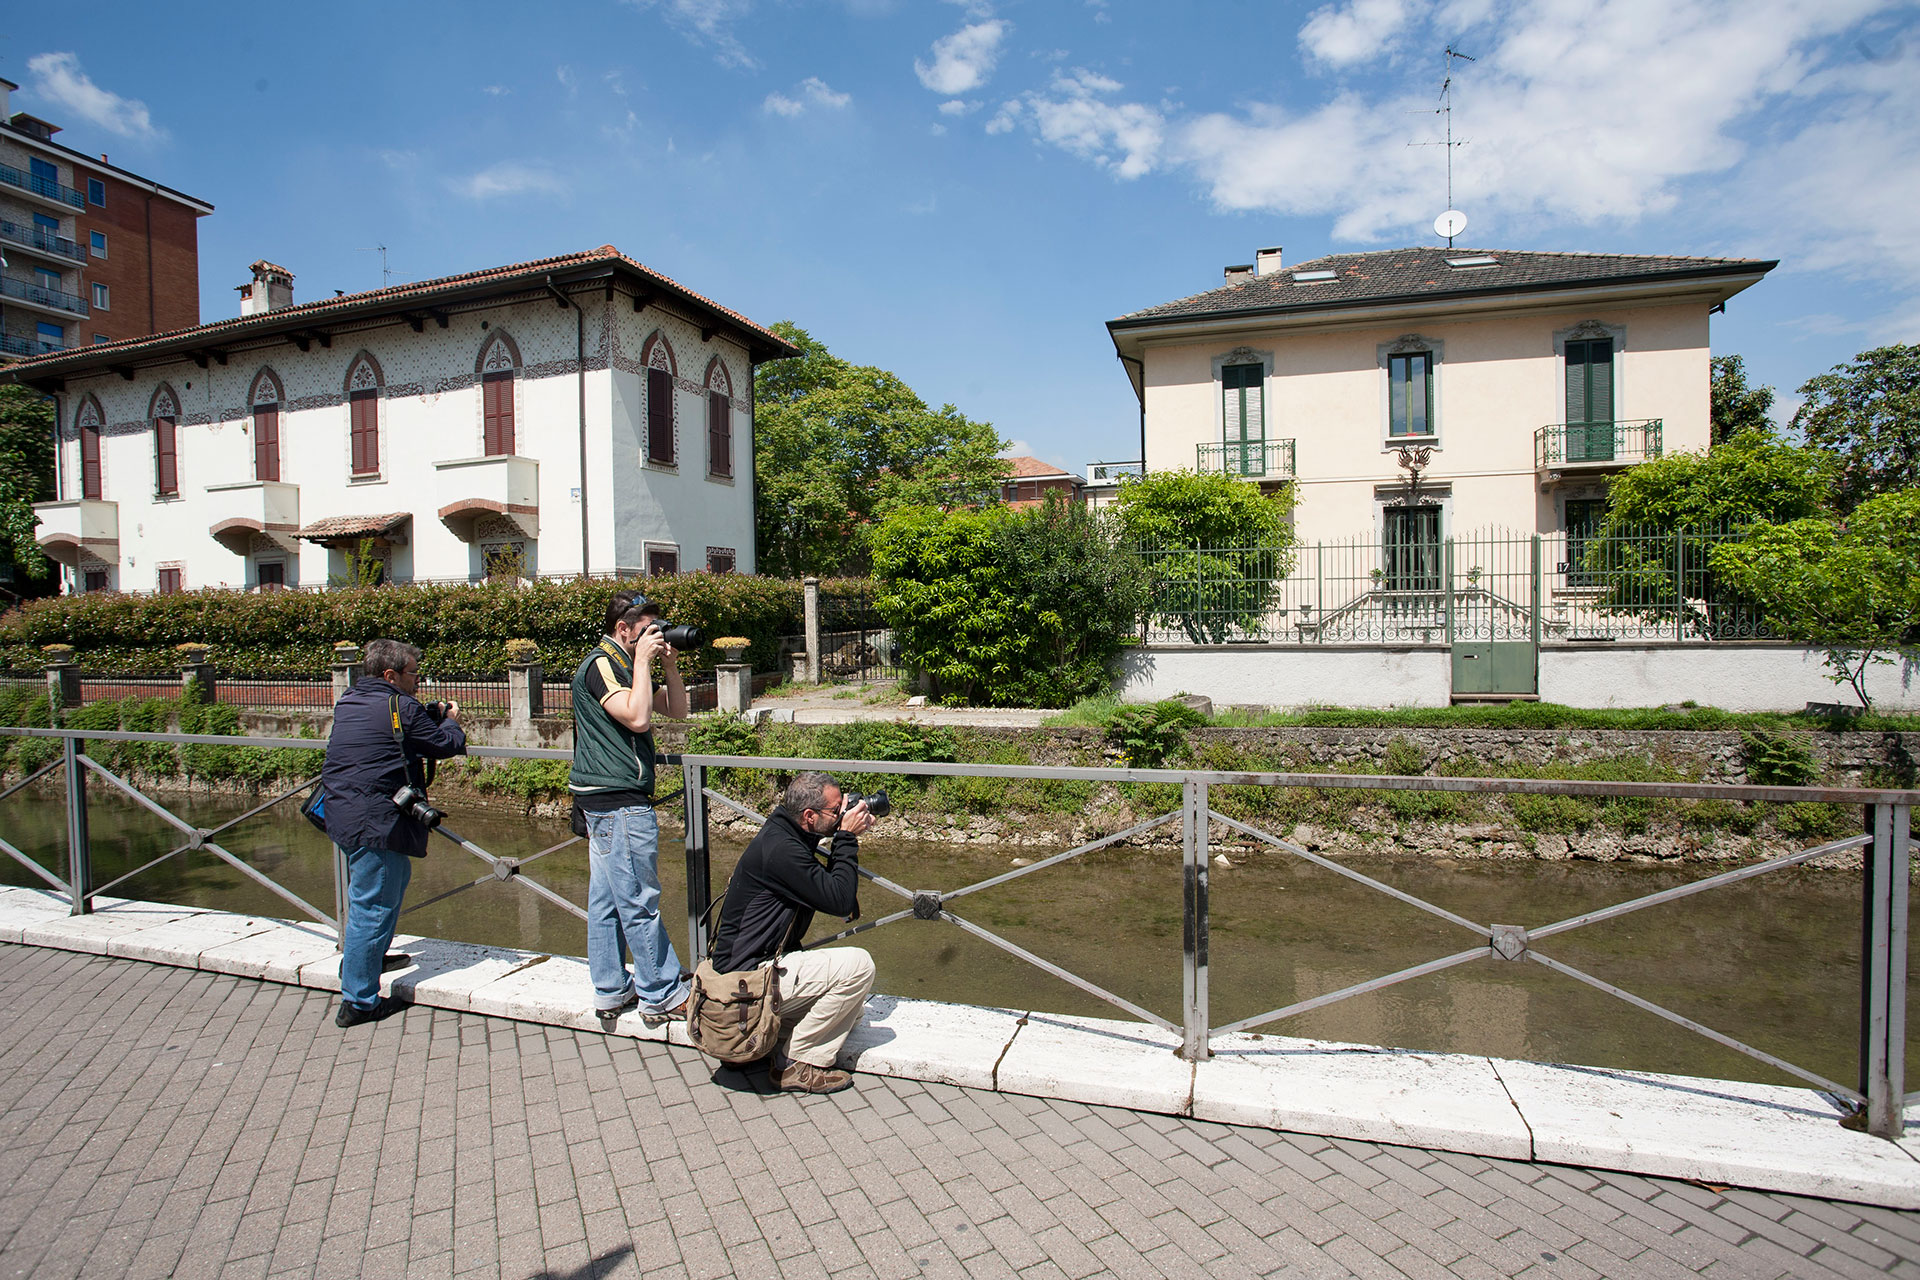 Reportage in Via Padova